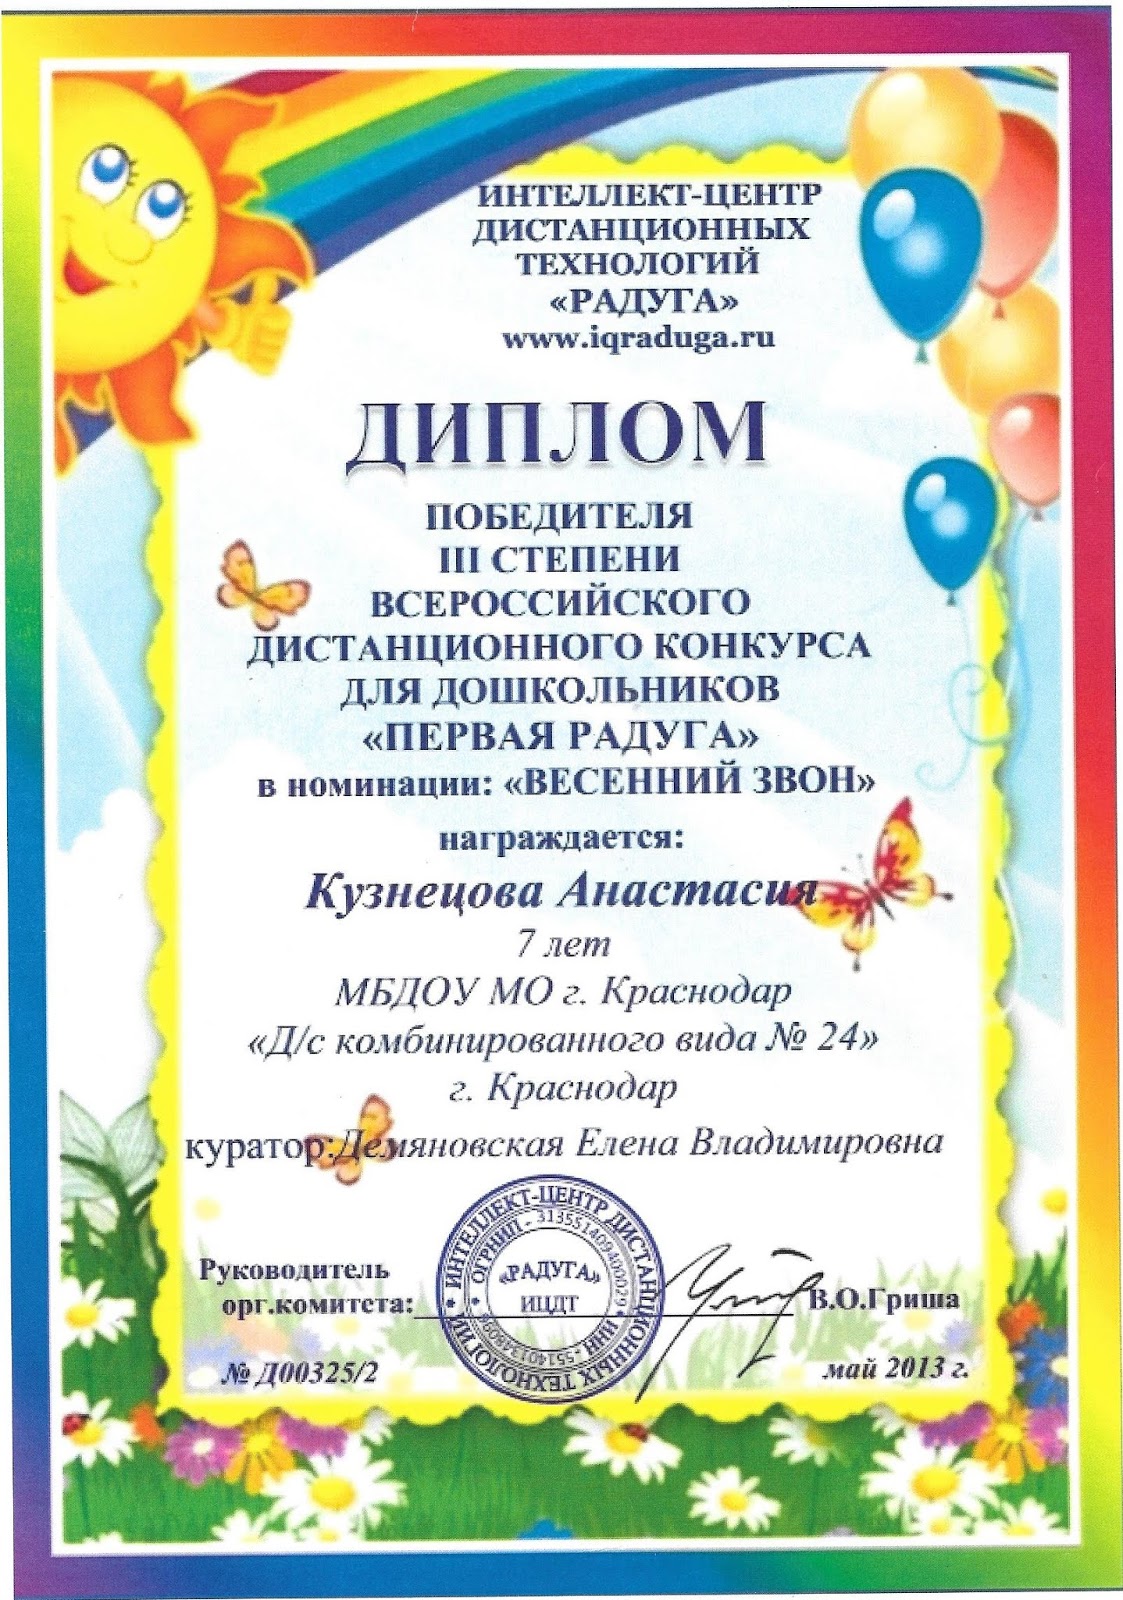 Всероссийский конкурс для дошкольников